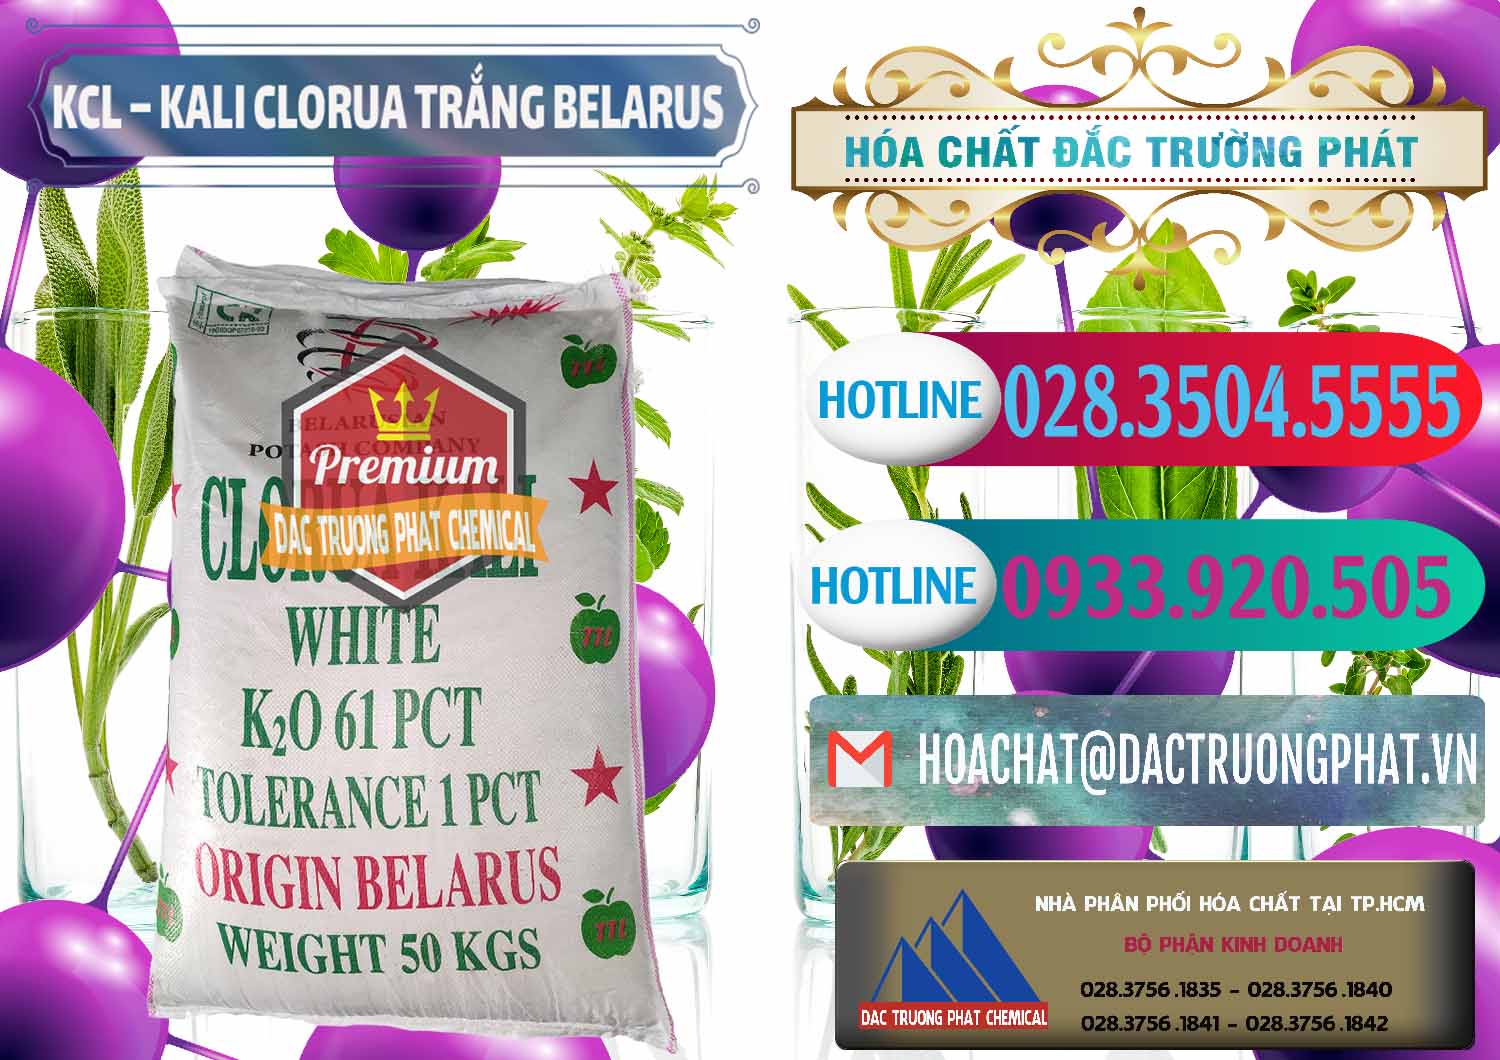 Công ty bán - cung cấp KCL – Kali Clorua Trắng Belarus - 0085 - Đơn vị chuyên phân phối & nhập khẩu hóa chất tại TP.HCM - truongphat.vn